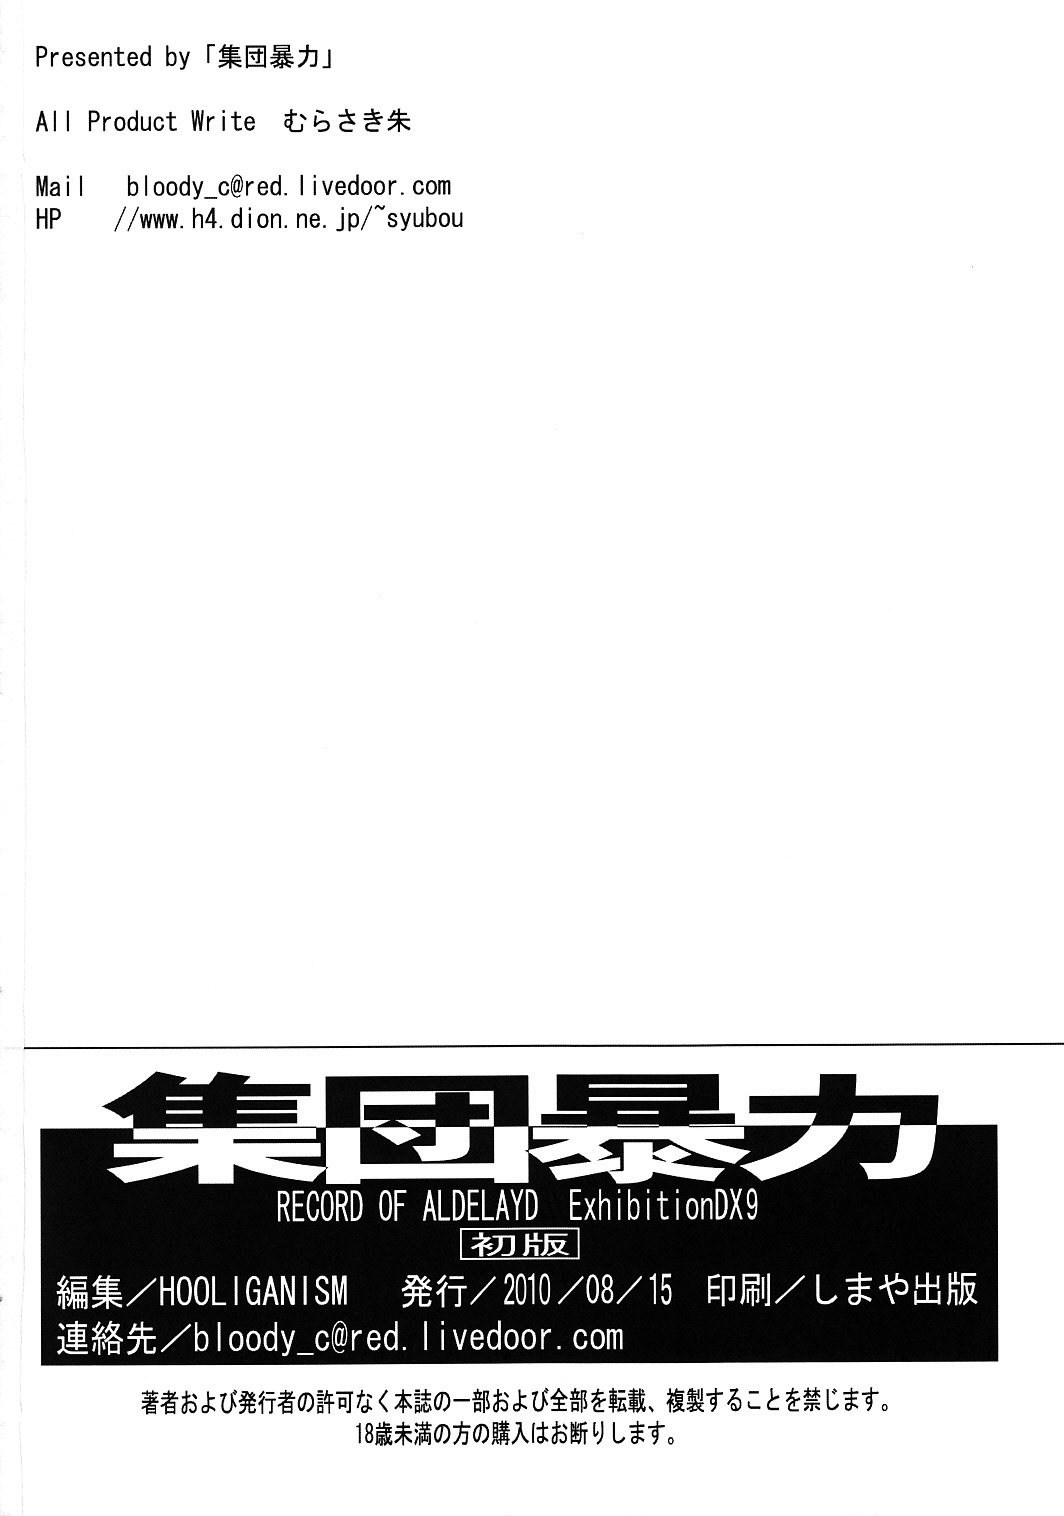 (C78) [Shuudan Bouryoku (よろず)] Hooliganism 17 Record of ALDELAYD Act.12 Exhibition DX9